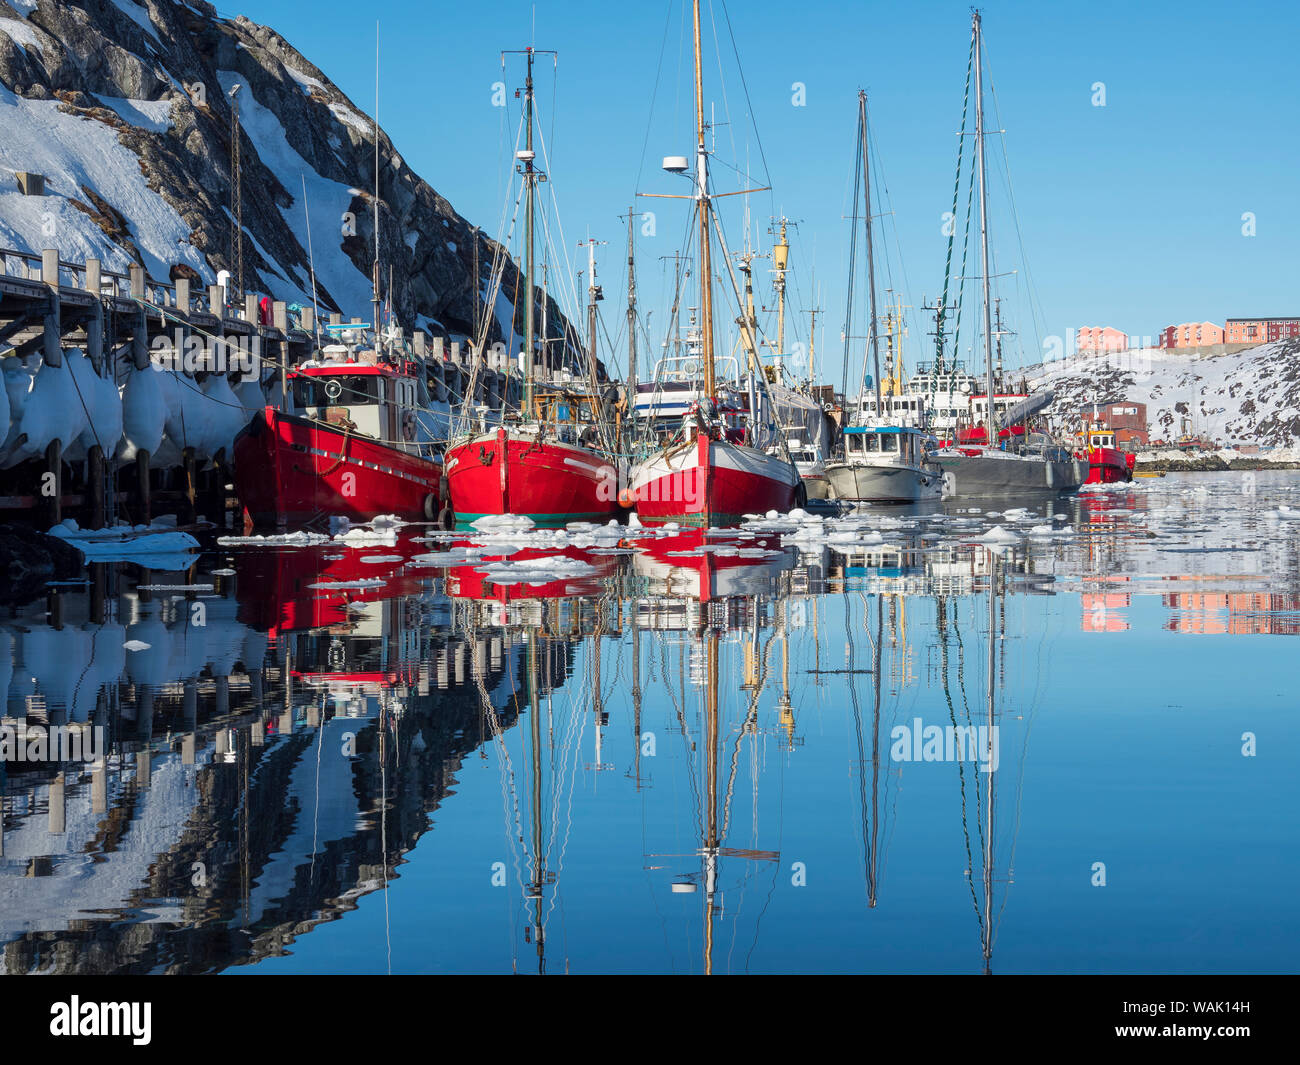 Le port de Nuuk. Nuuk, capitale du Groenland. (Usage éditorial uniquement) Banque D'Images